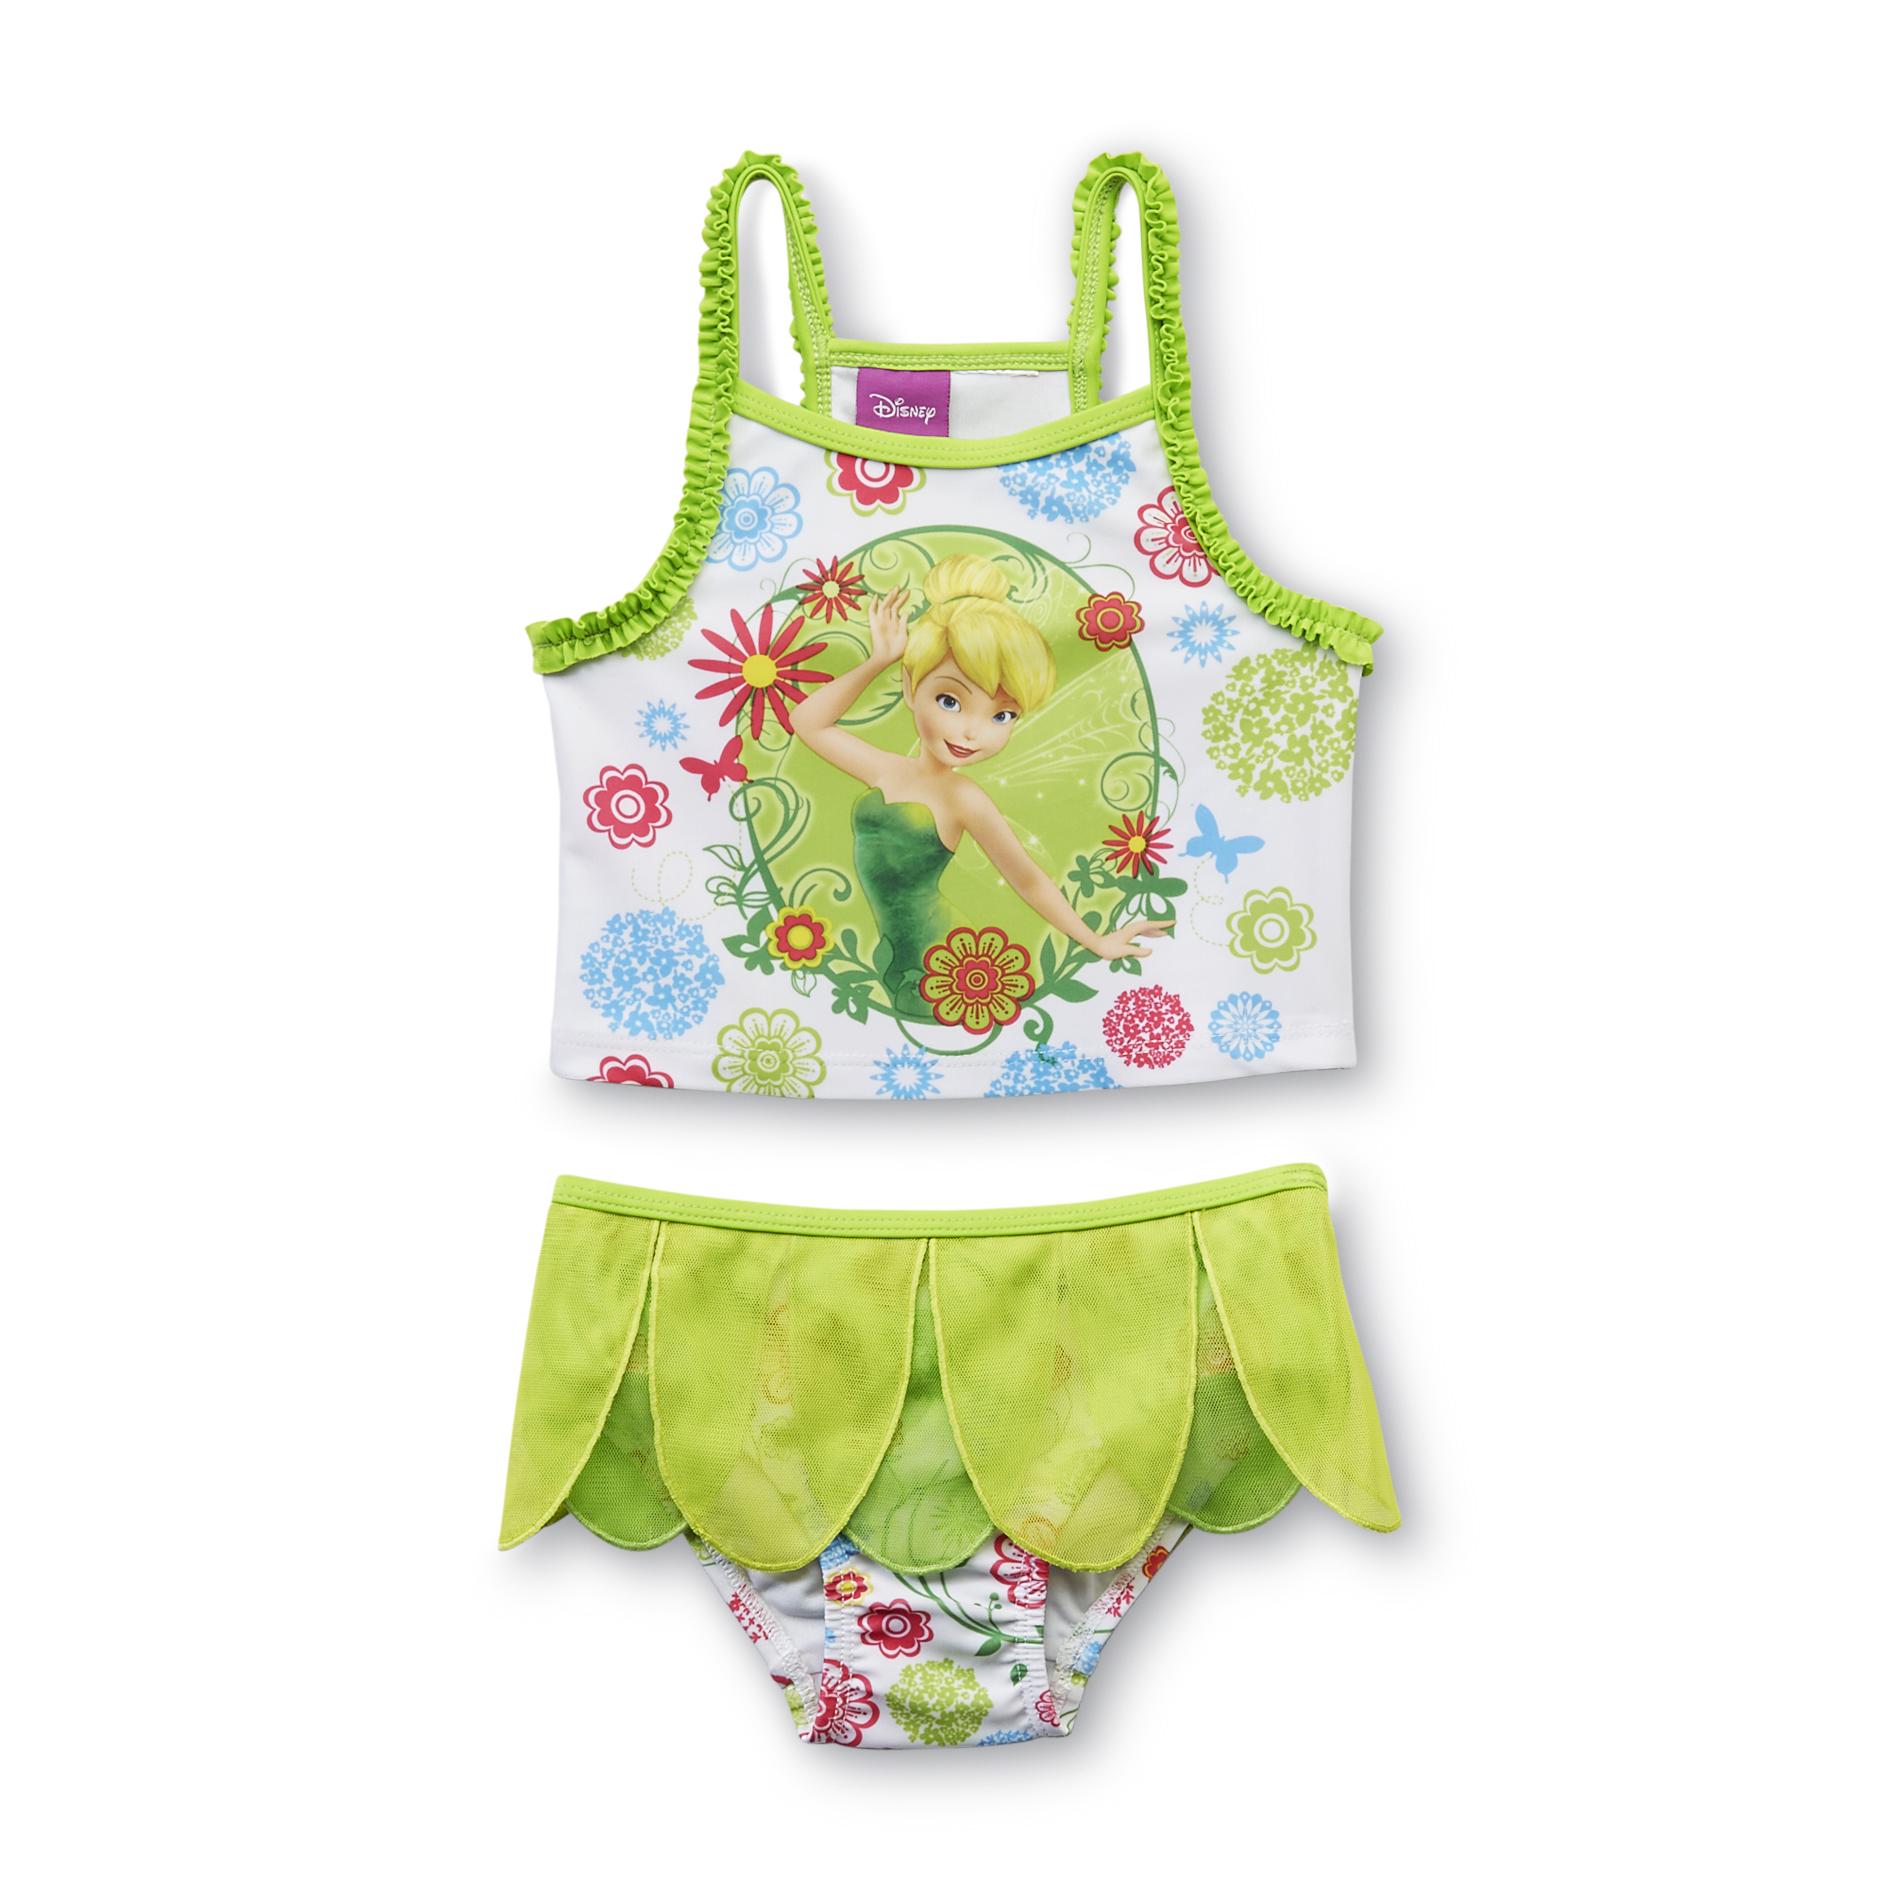 Disney Toddler Girl's Tankini Swim Top & Bottoms - Tinker Bell